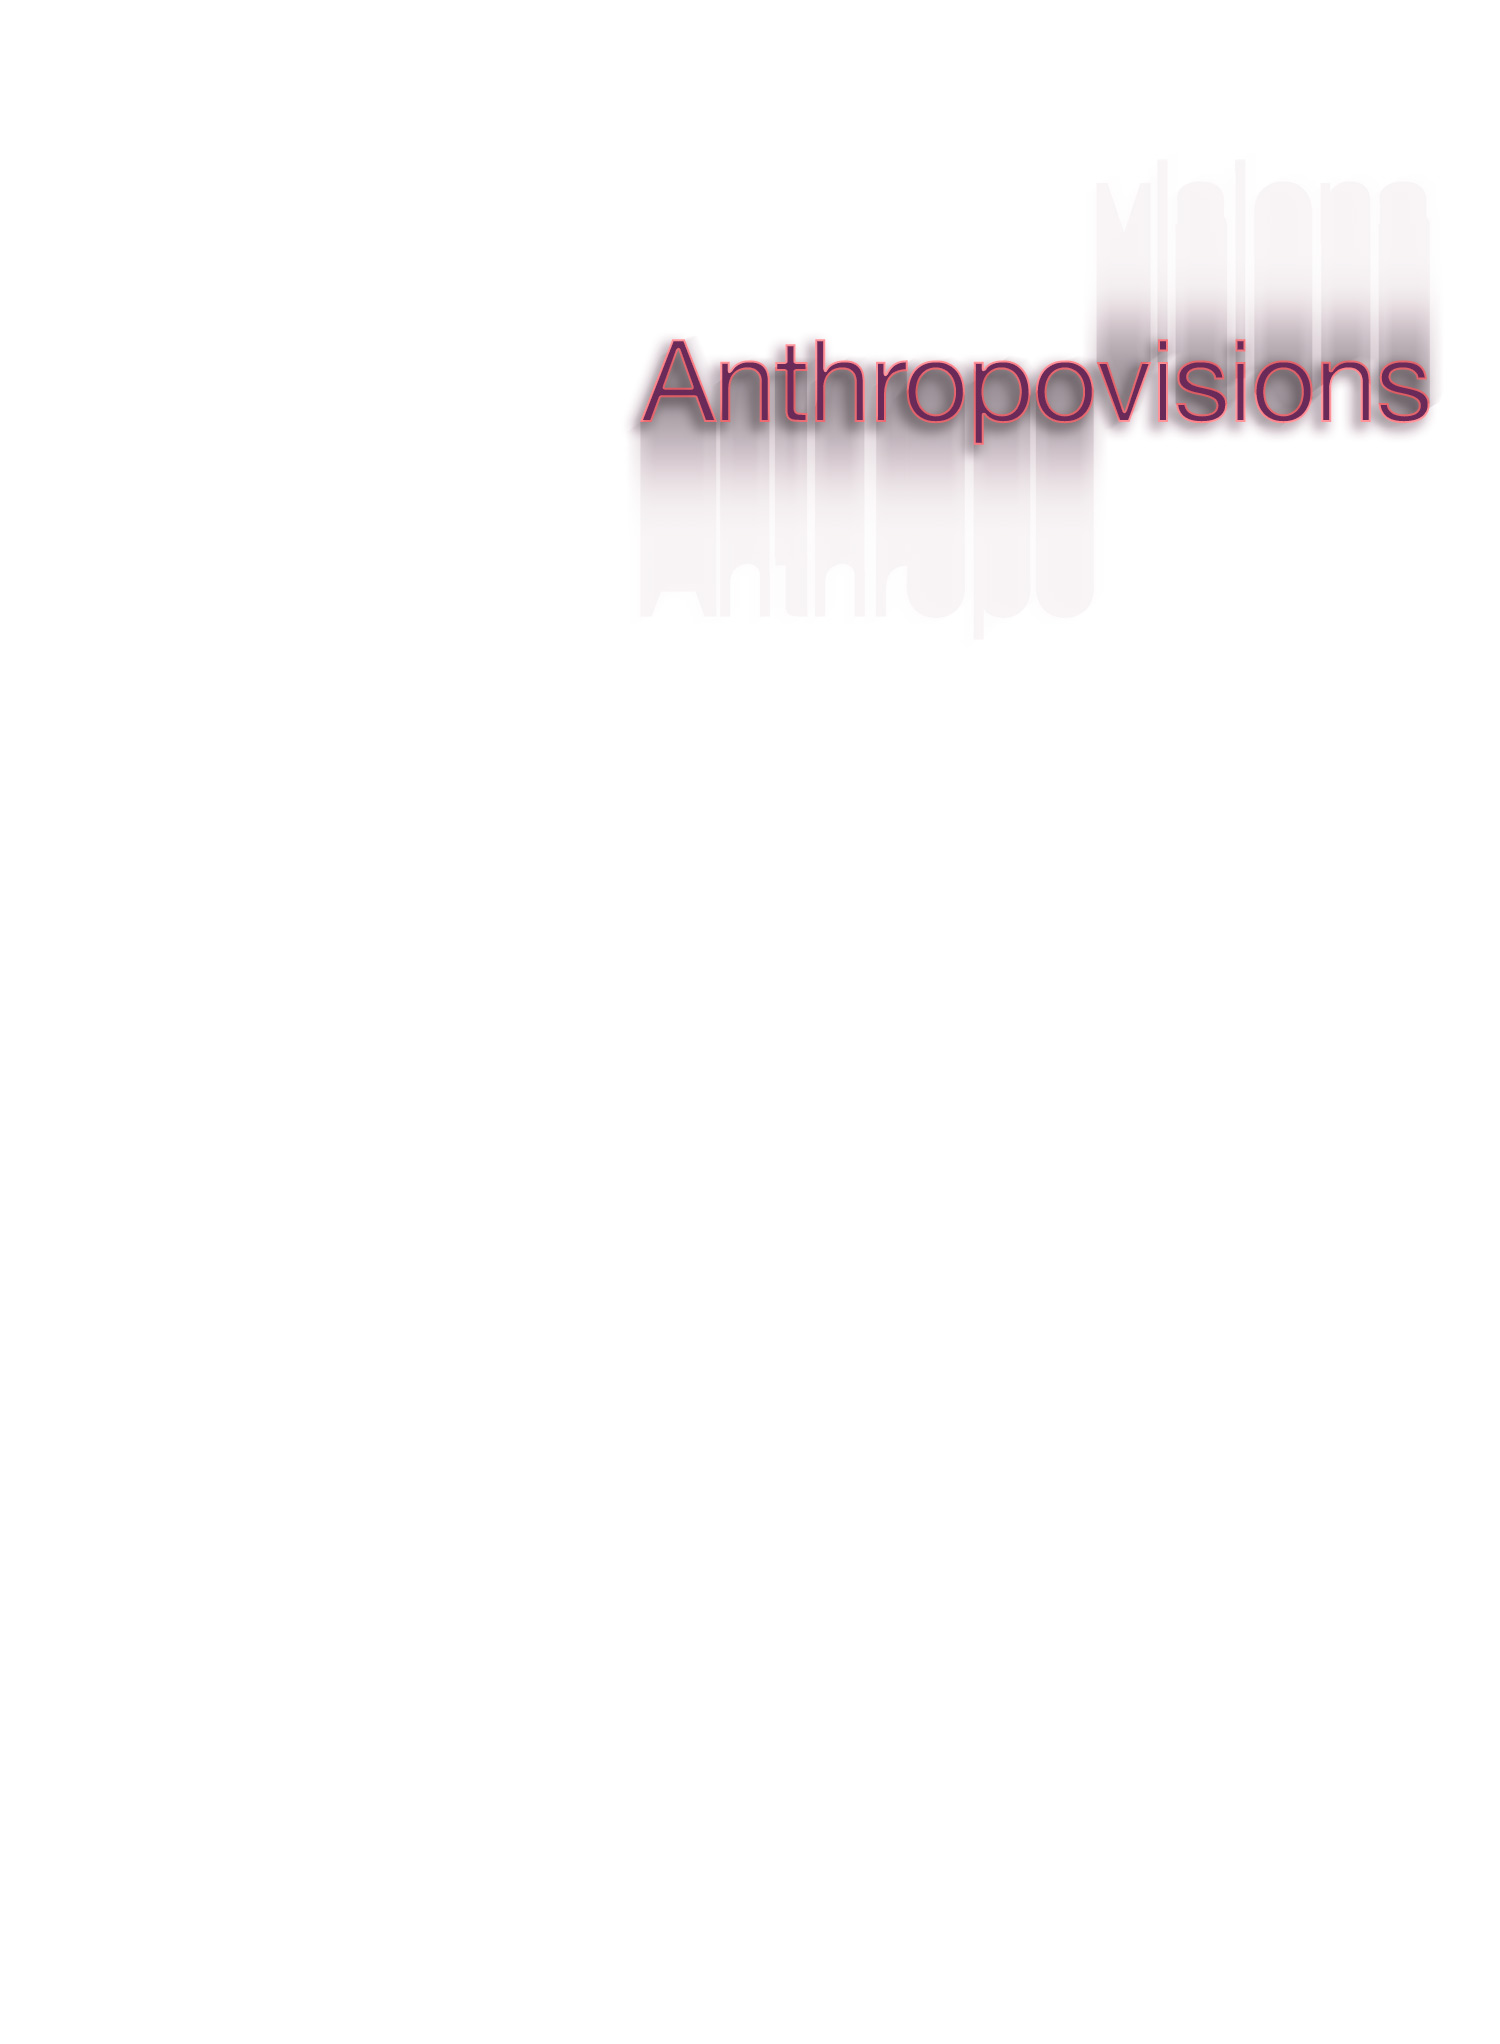 Anthropovisions-header-02